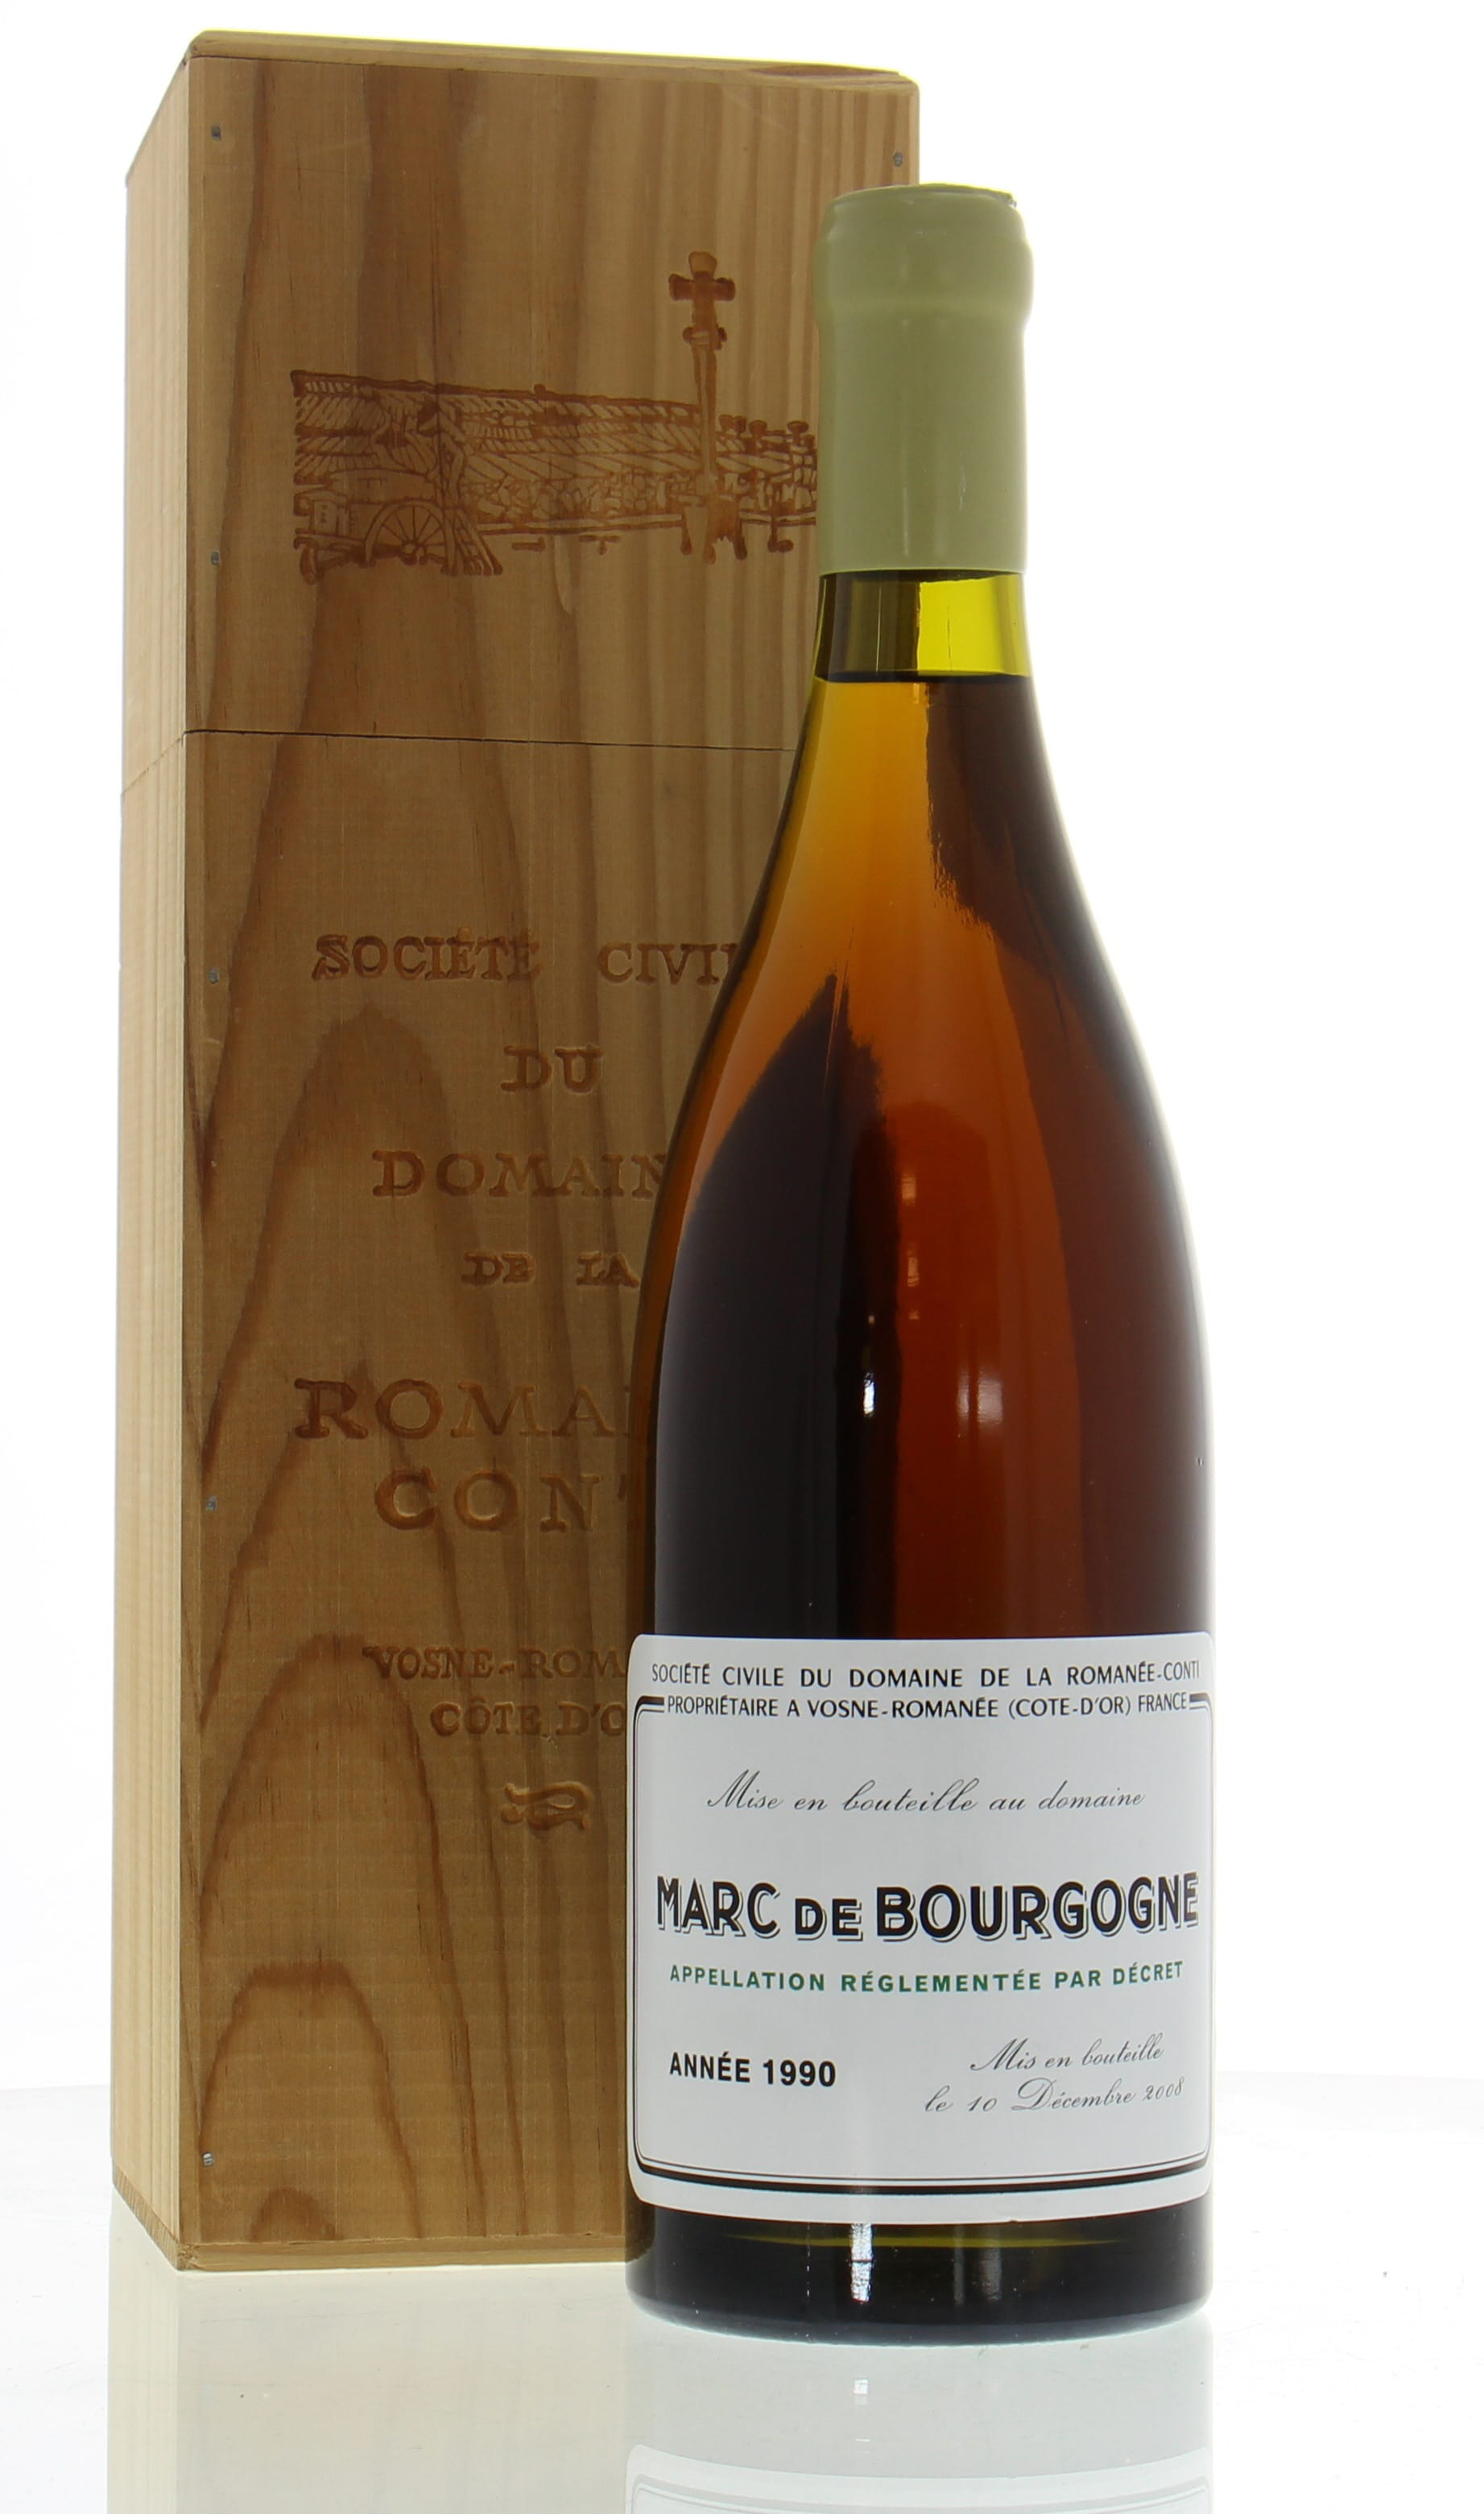 Domaine de la Romanee Conti - Marc de Bourgogne 1990